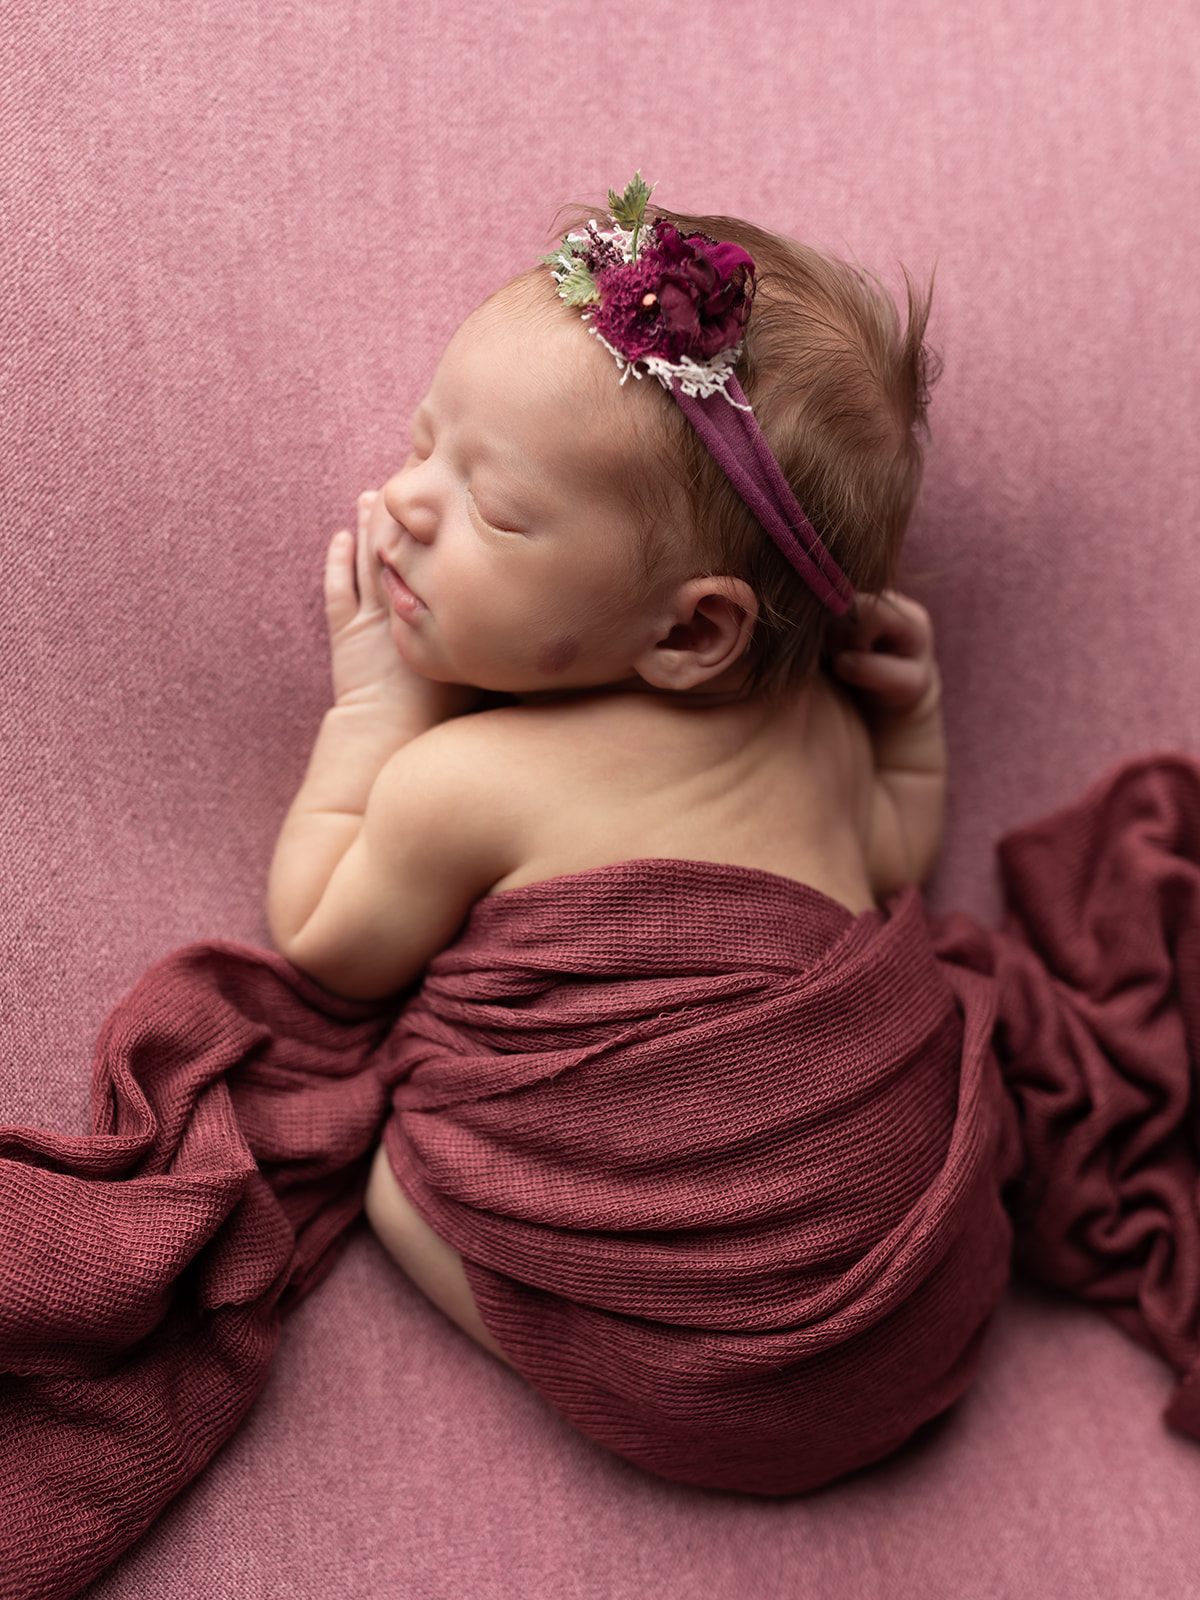 A newborn baby sleeps on her belly wearing a purple flower headband